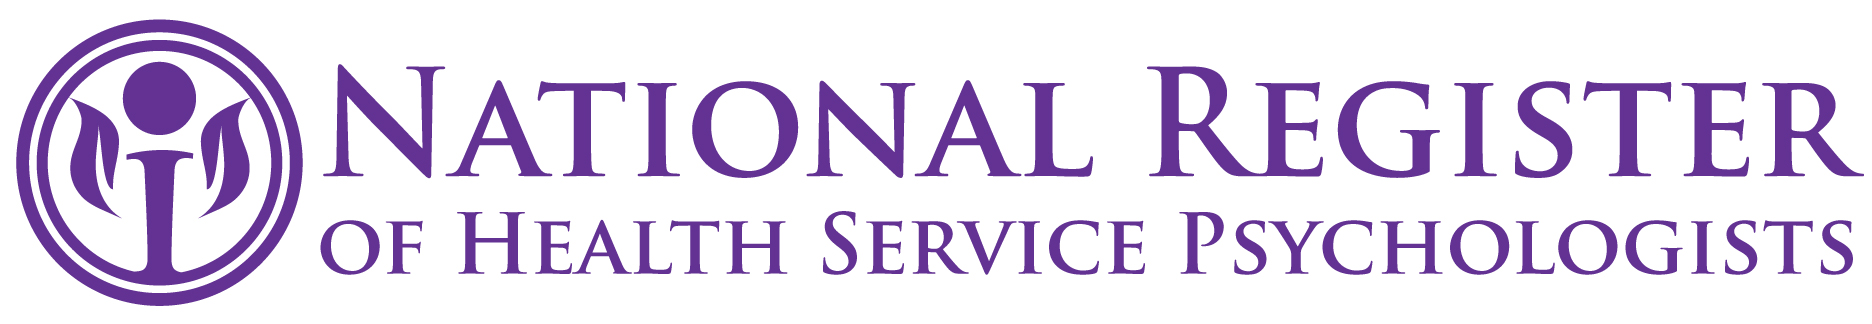 National Register of Health Service Psychologists Logo